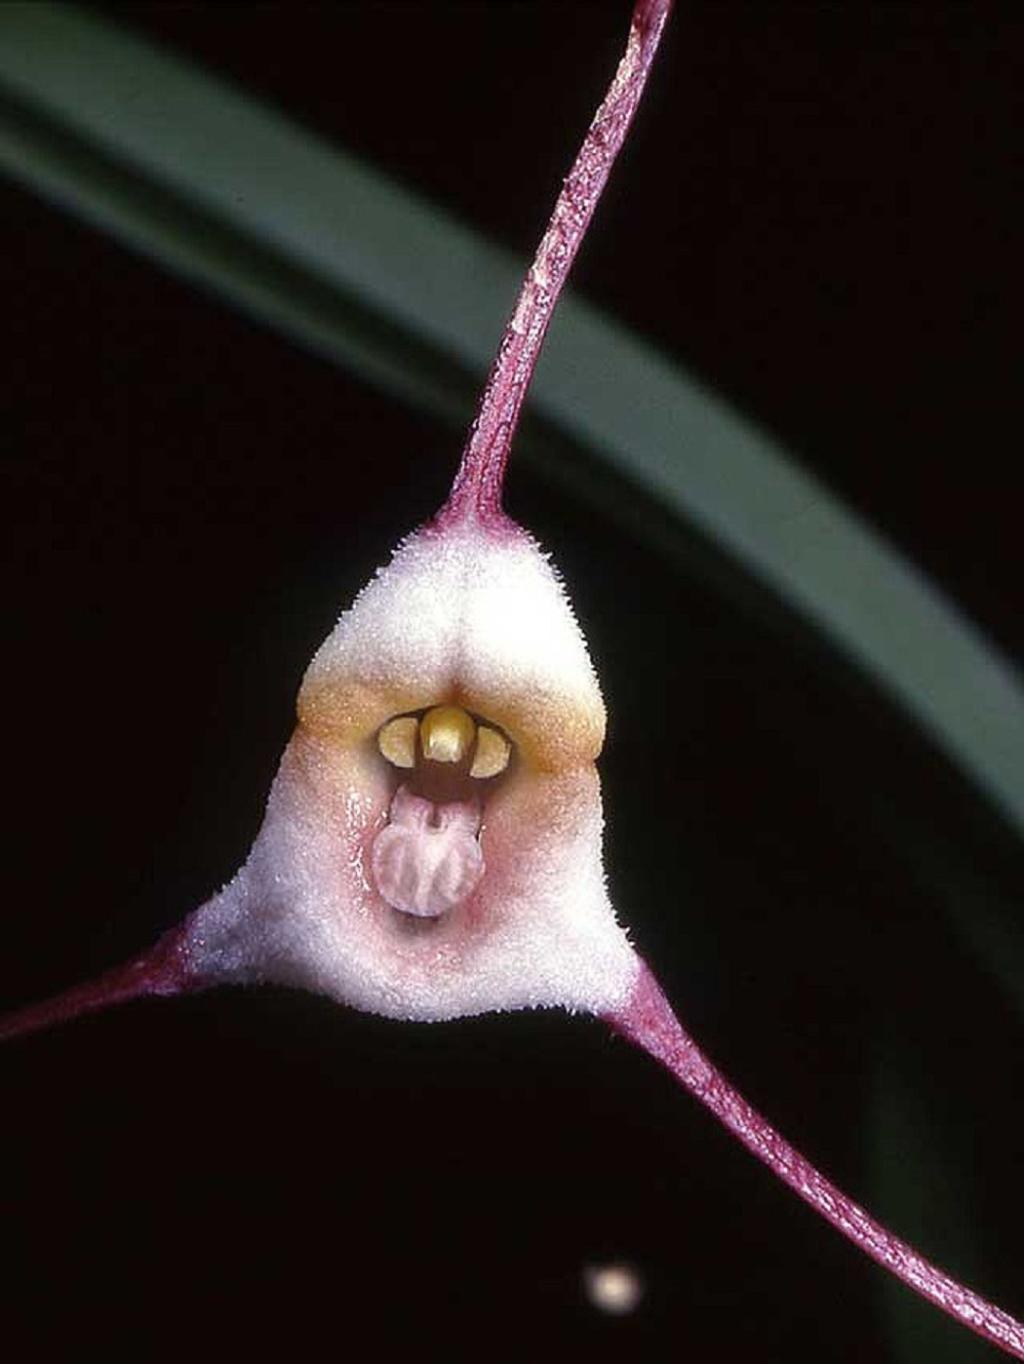 ارکیده دراکولا( The Dracula Orchid)